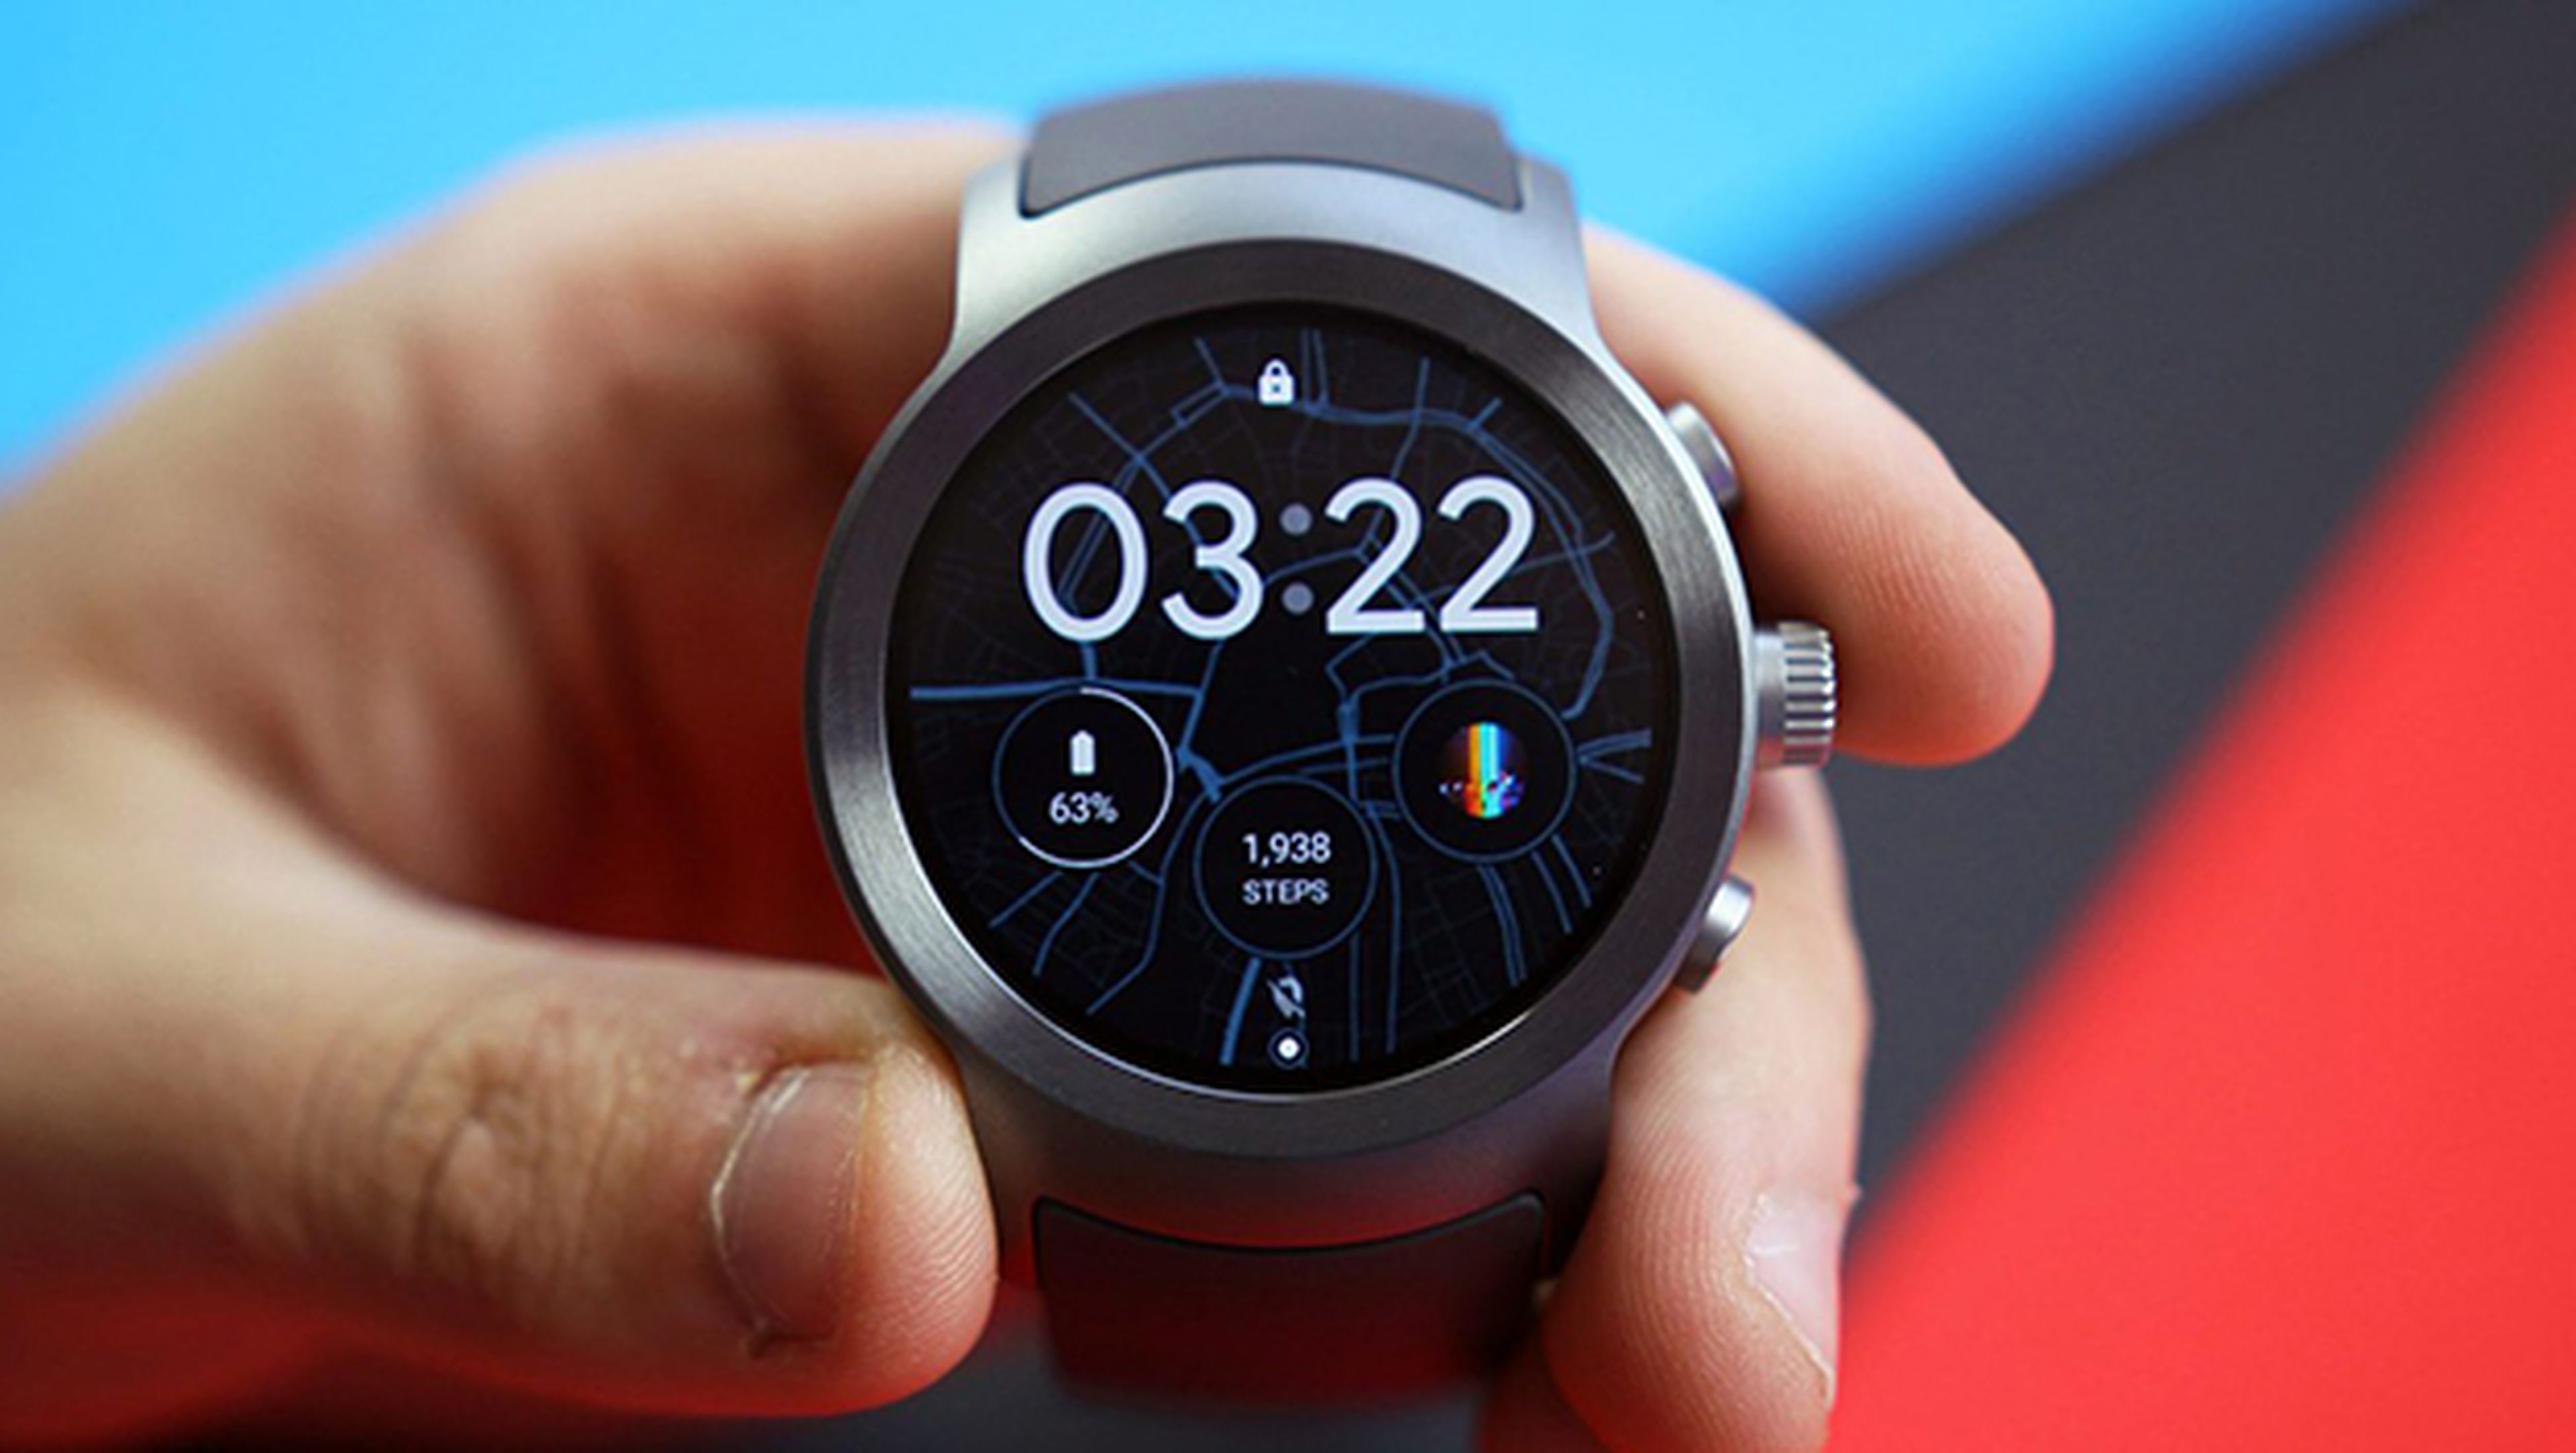 Wear os watches. Tizen os смарт часы. Android Wear часы. Смарт часы на базе Android Wear. Wear os часы.